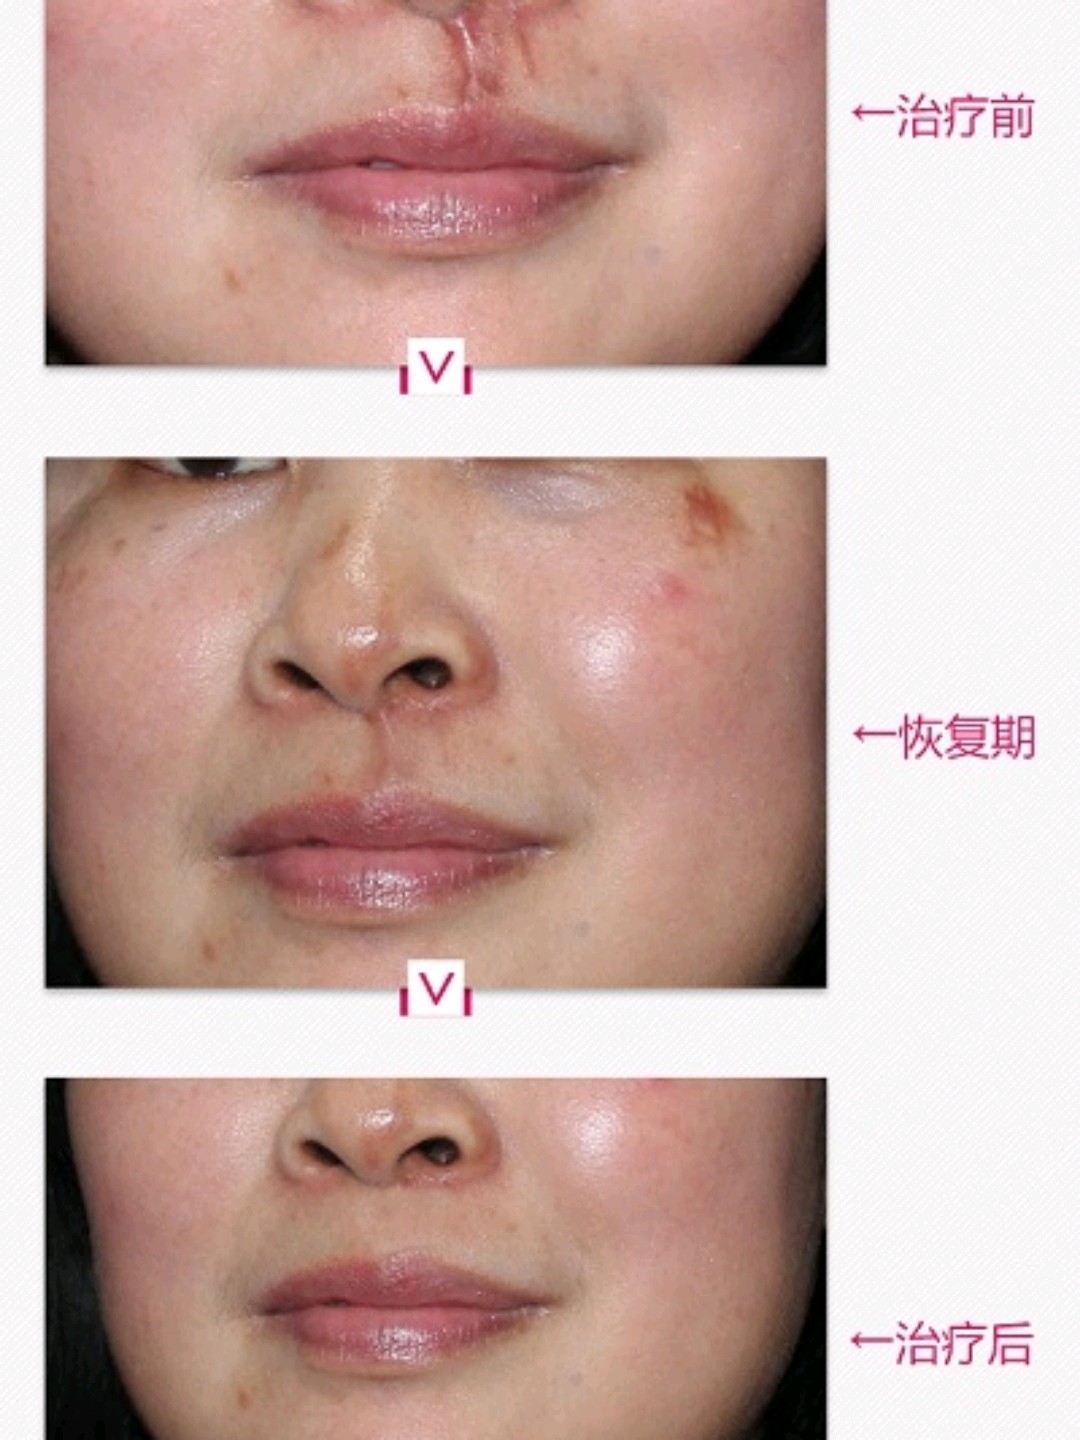 治疗的鼻子外表疤痕修复案例反馈,效果令人满意